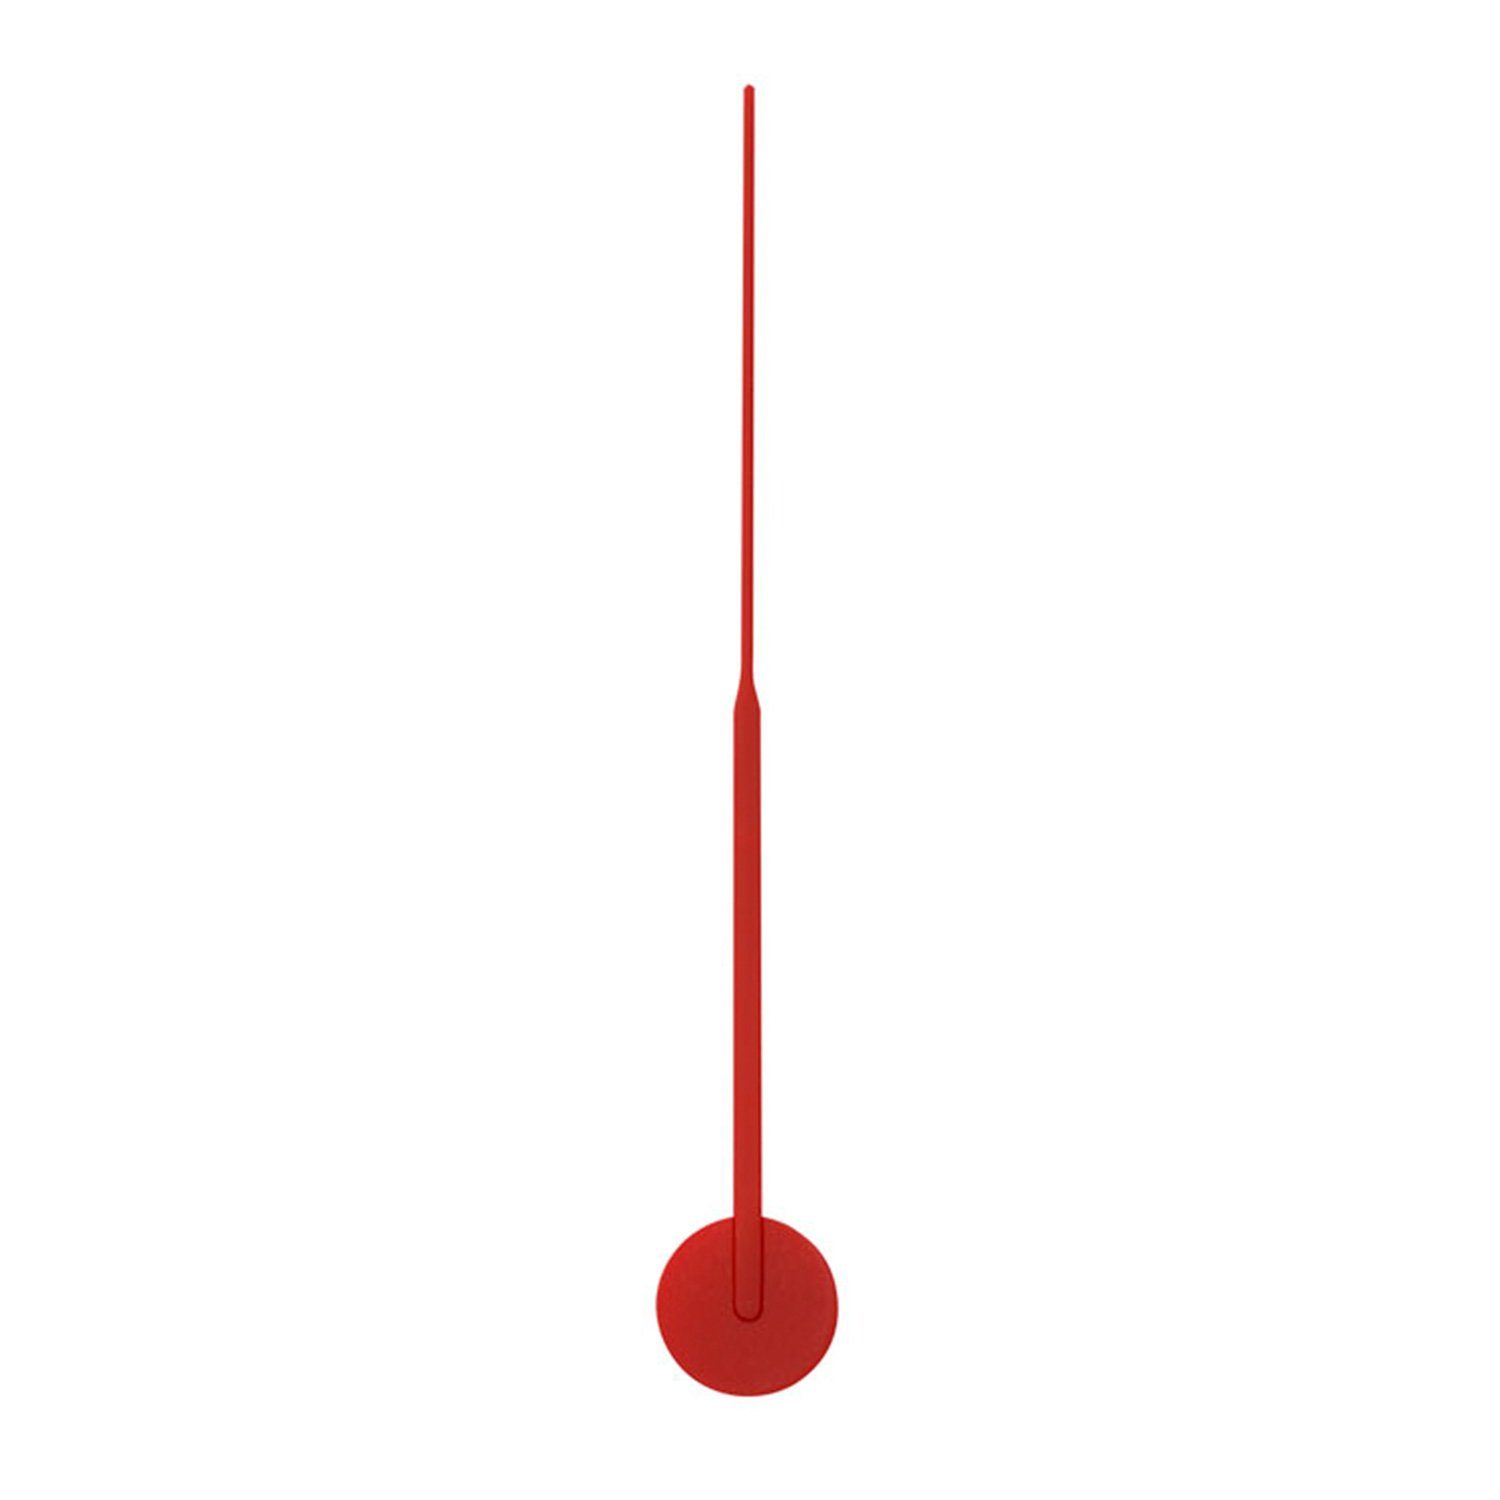 Selva Technik Wanduhr Sekundenzeiger Euronorm, Faden, Rot, matt, aus Kunststoff, 60 mm